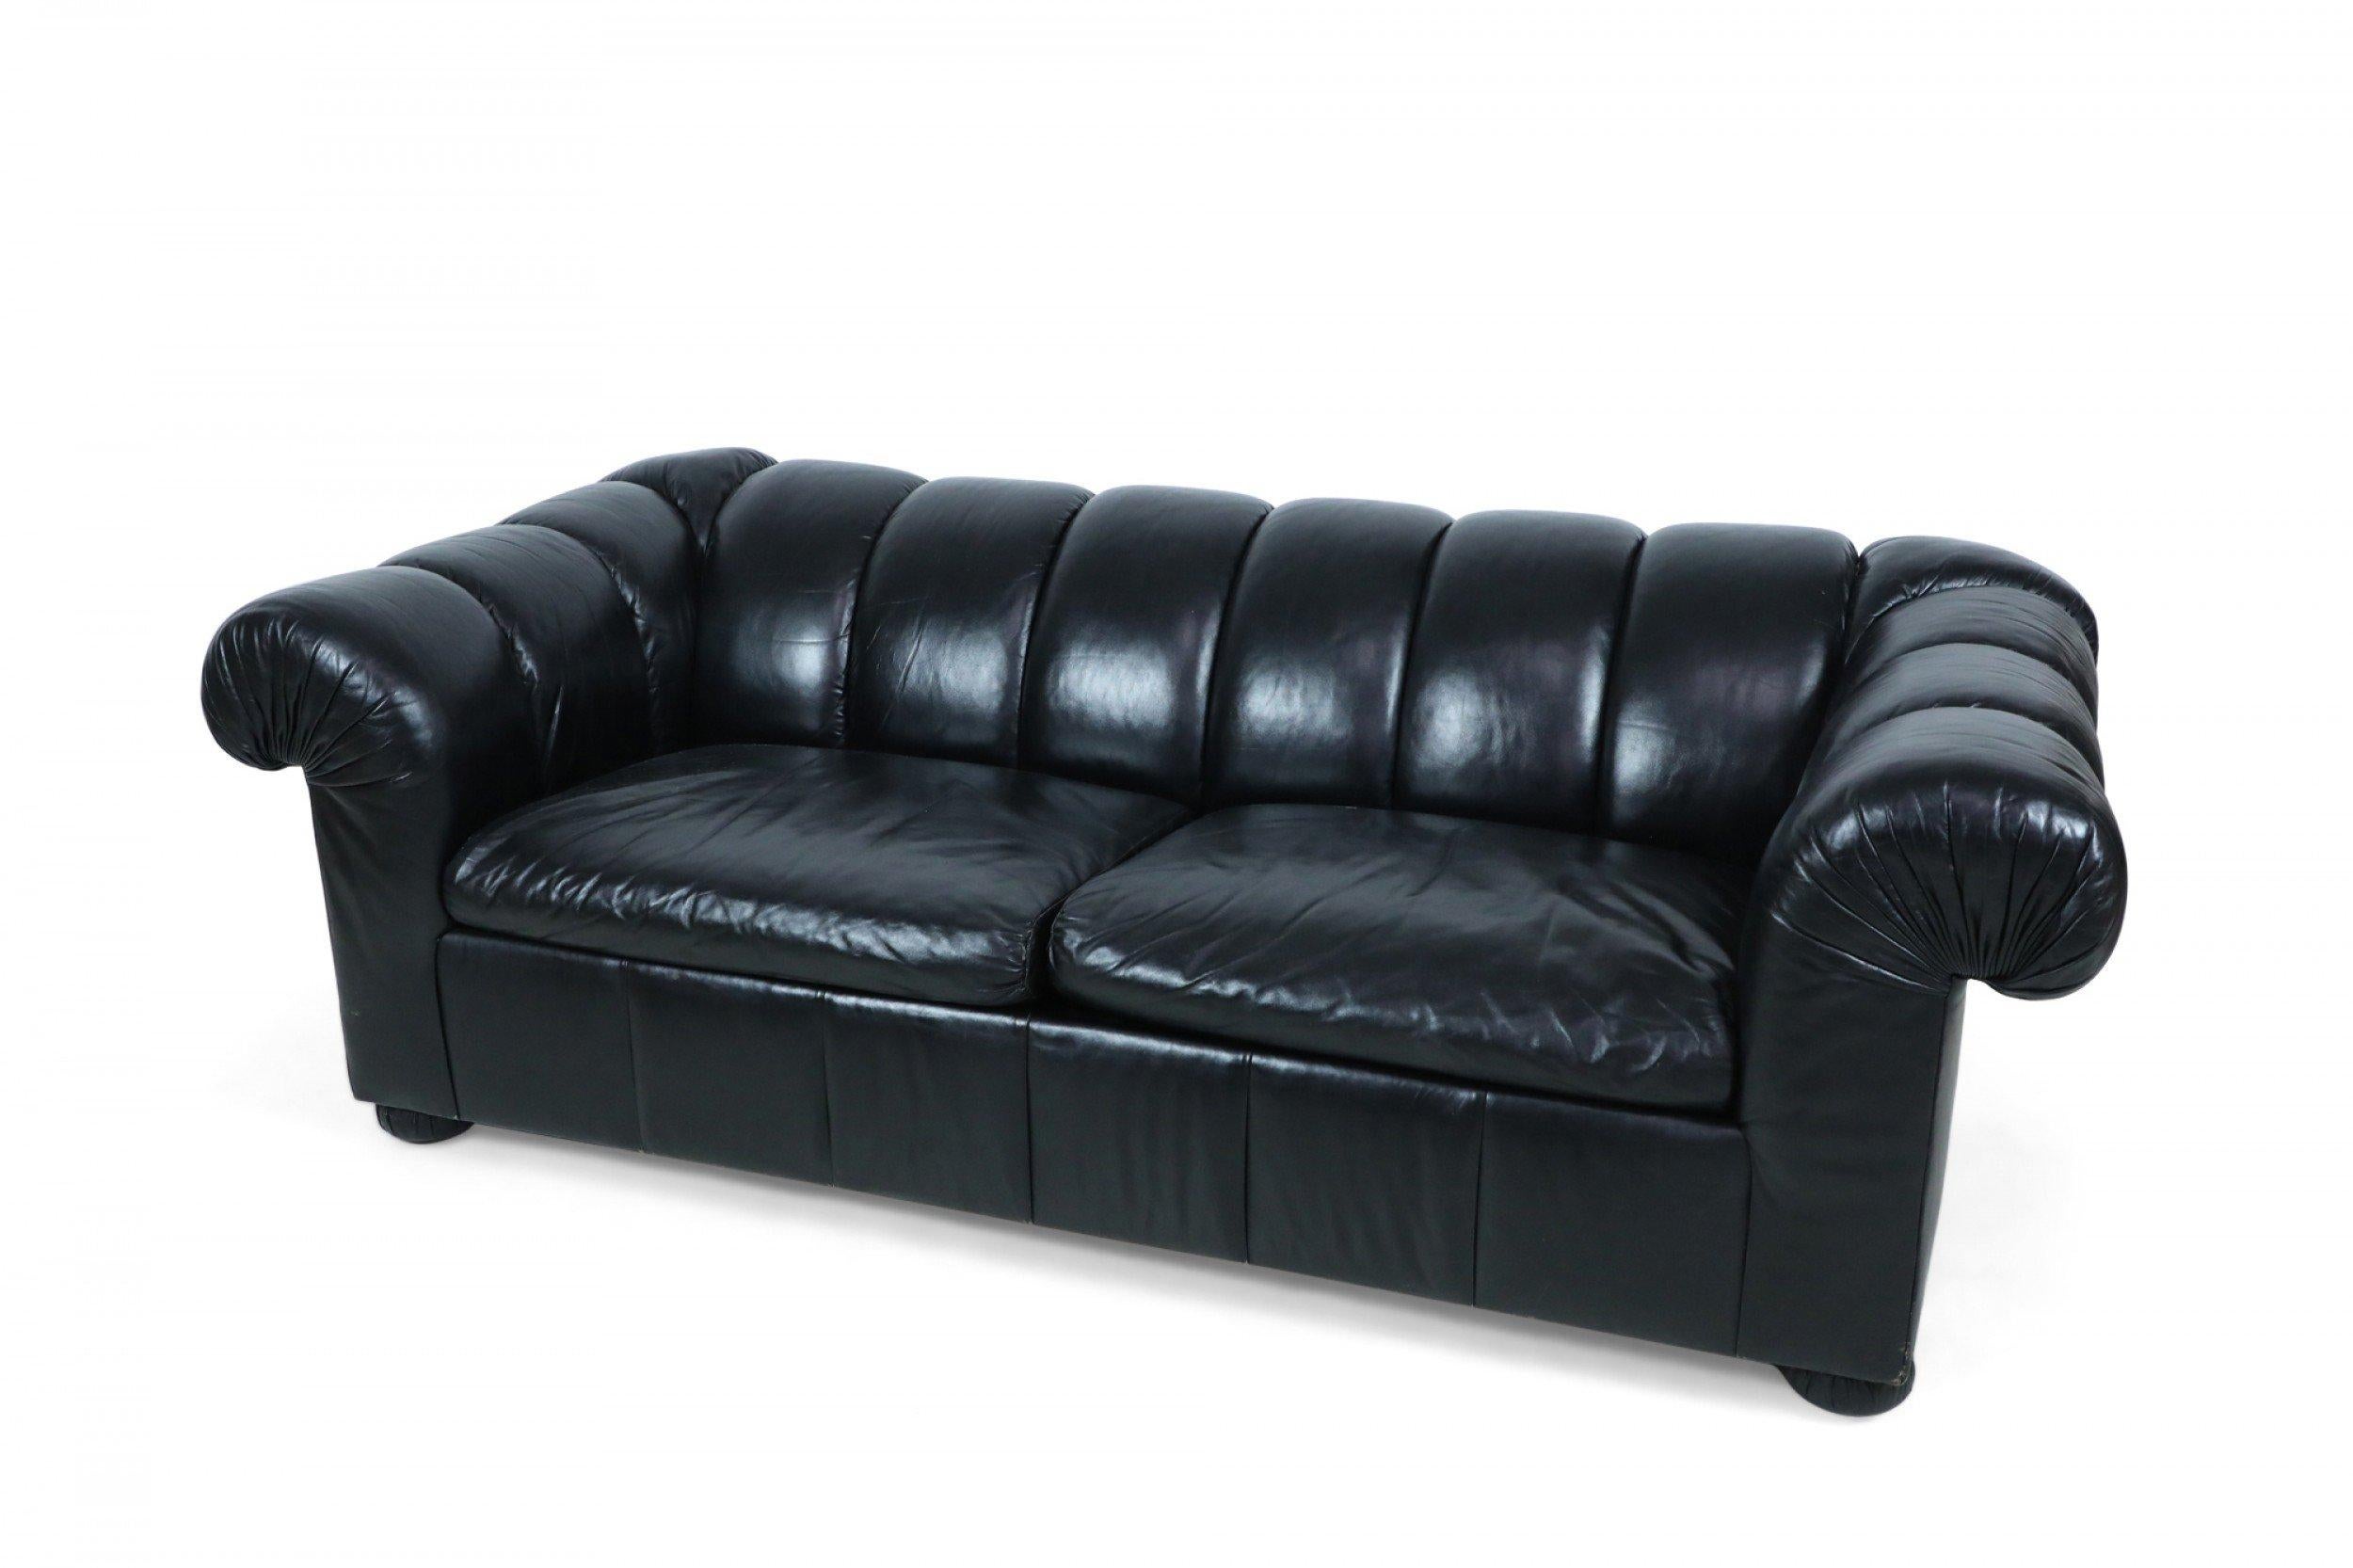 Modernes Chesterfield-Sofa im englischen Stil mit getuftetem schwarzem Leder und ausziehbarem Klappbett unter zwei kanalisierten Sitzpolstern.
 